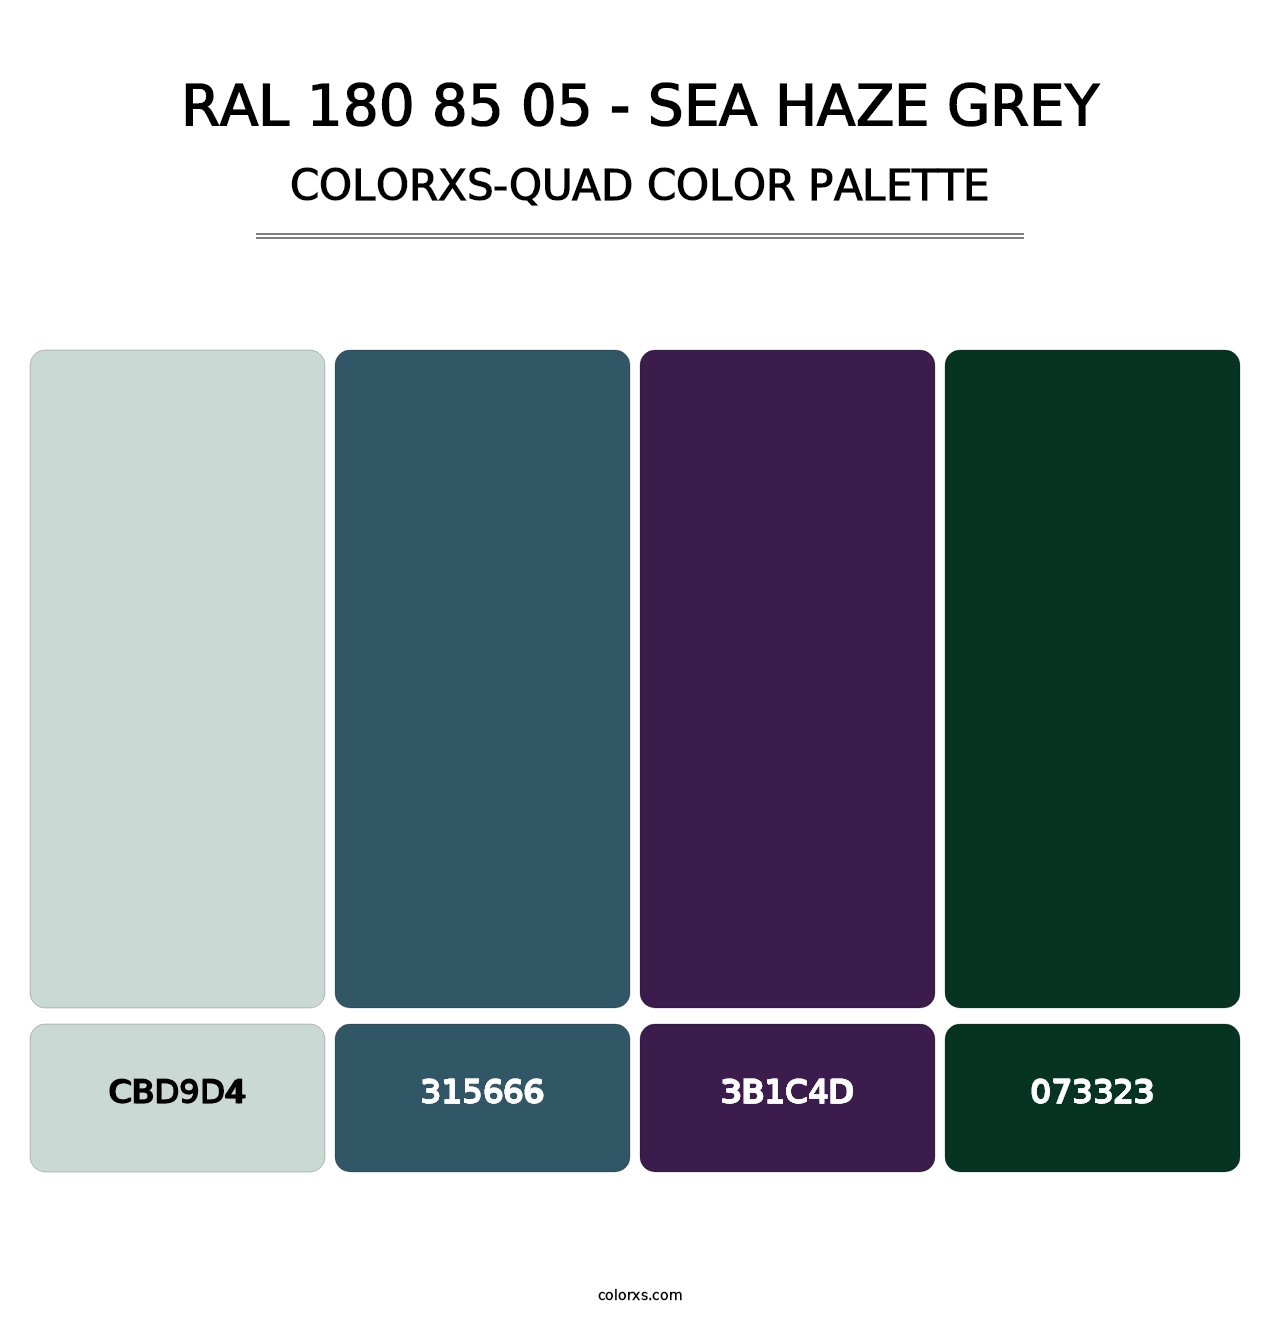 RAL 180 85 05 - Sea Haze Grey - Colorxs Quad Palette